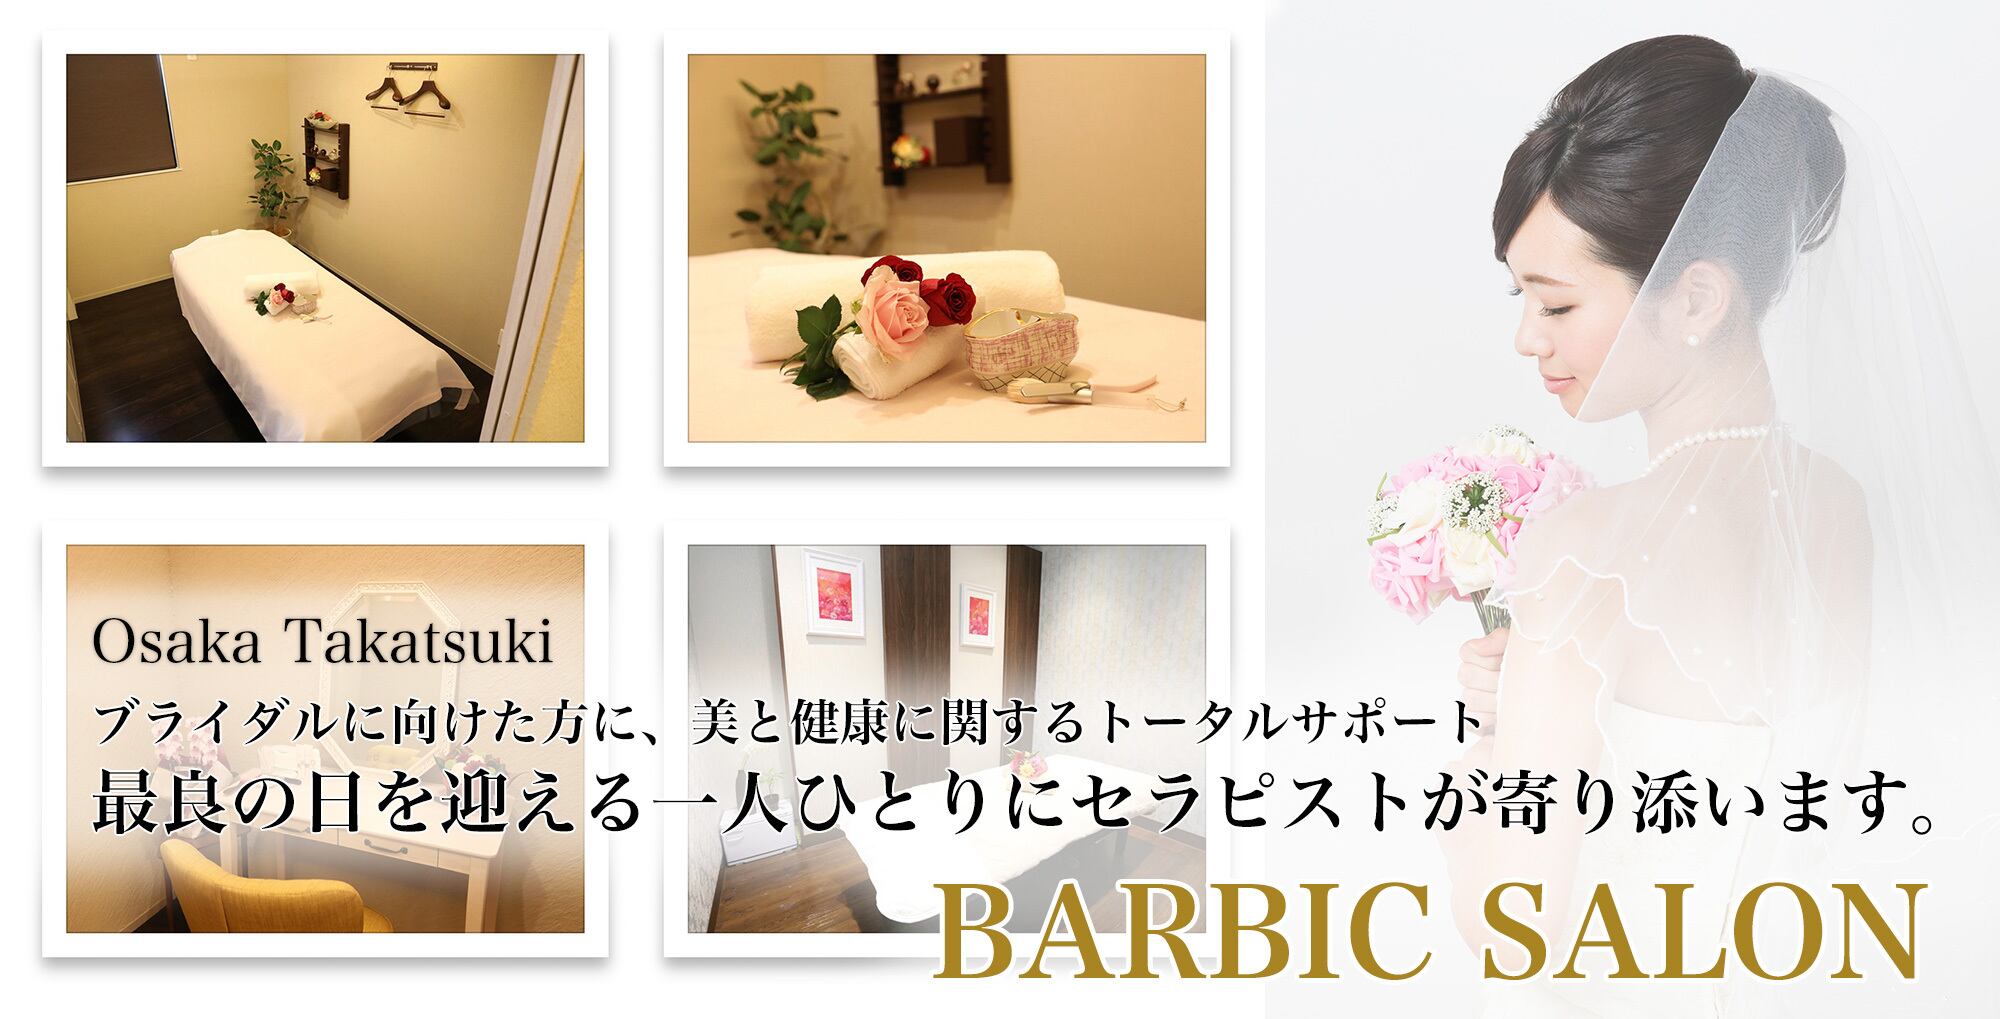 【WELCOME!】BARBIC 通販サイトがオープンしました！